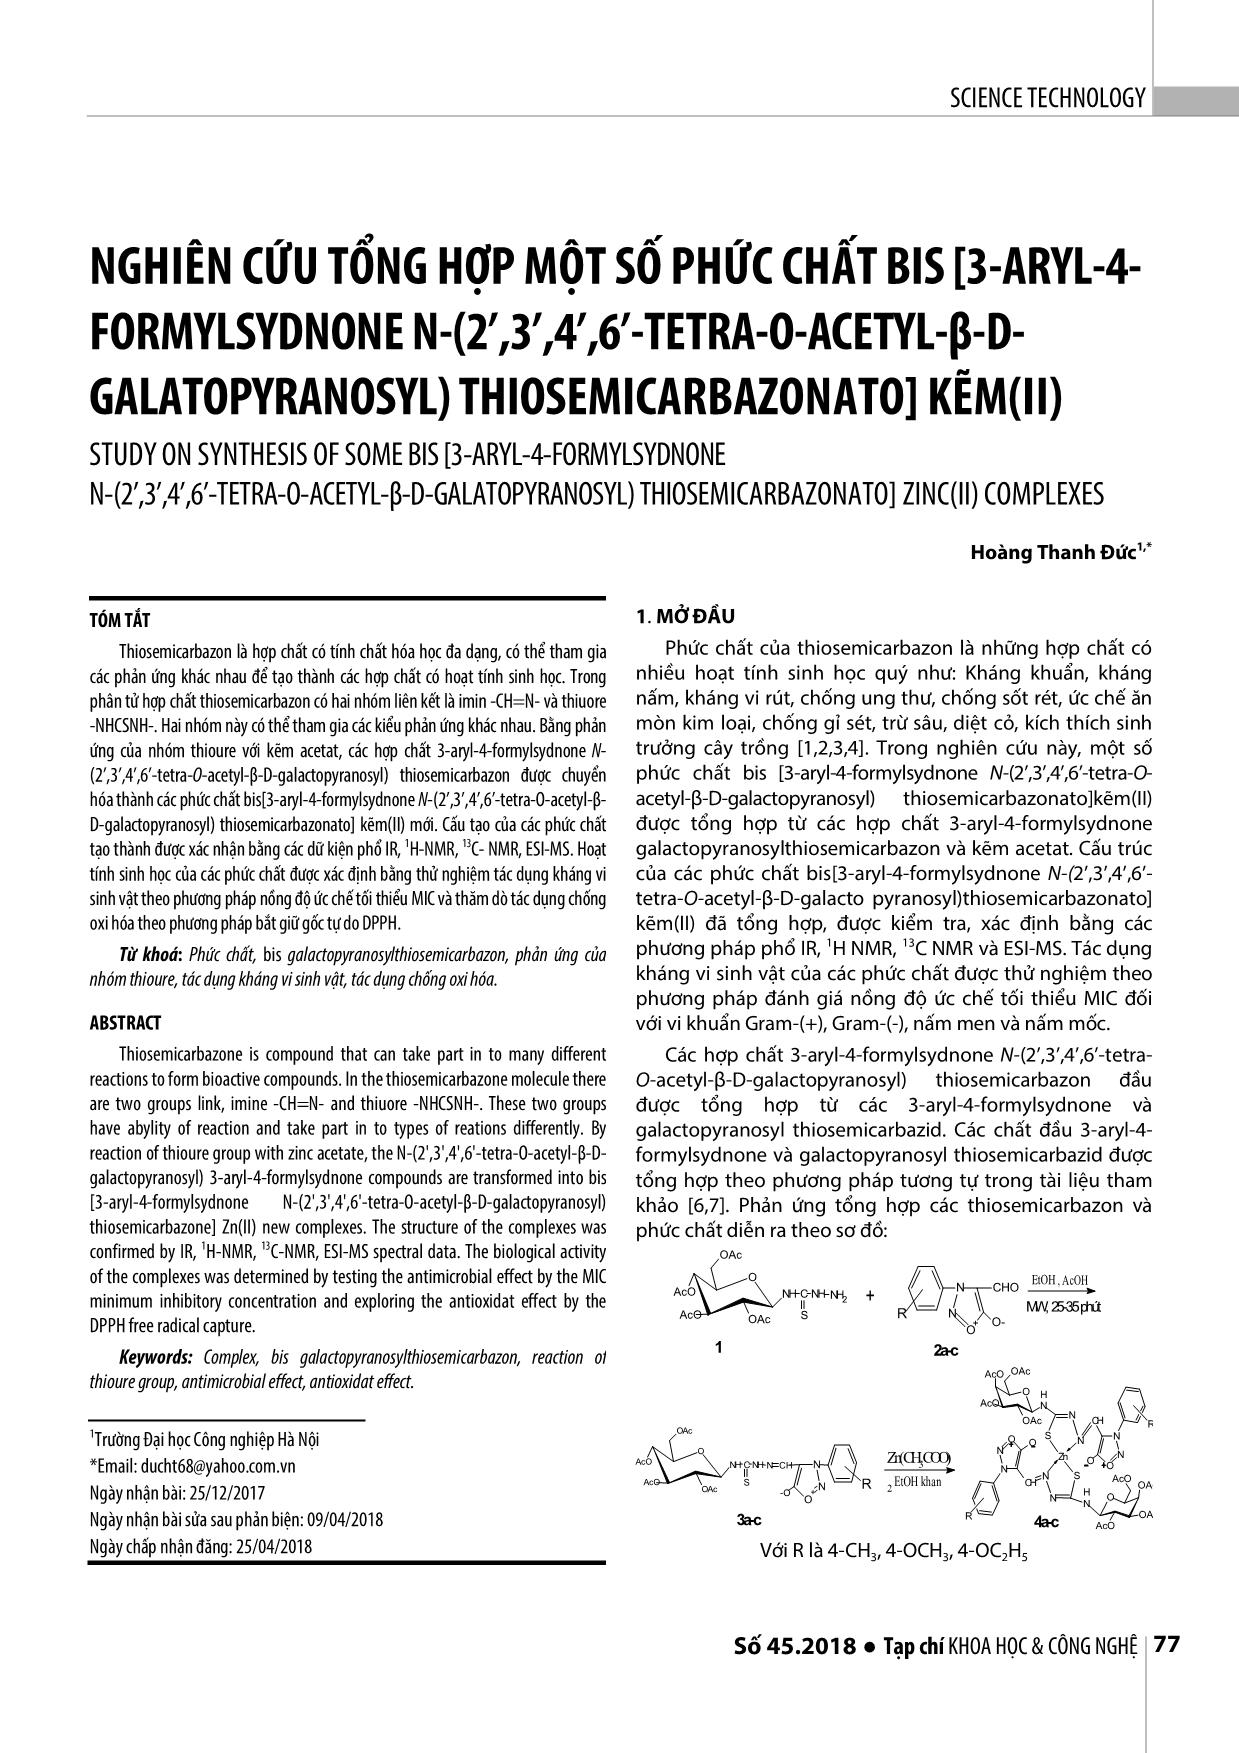 Nghiên cứu tổng hợp một số phức chất bis [3-Aryl-4- formylsydnone n-(2’,3’,4’,6’-tetra-o-acetyl-β-dgalatopyranosyl) thiosemicarbazonato] kẽm(II) trang 1